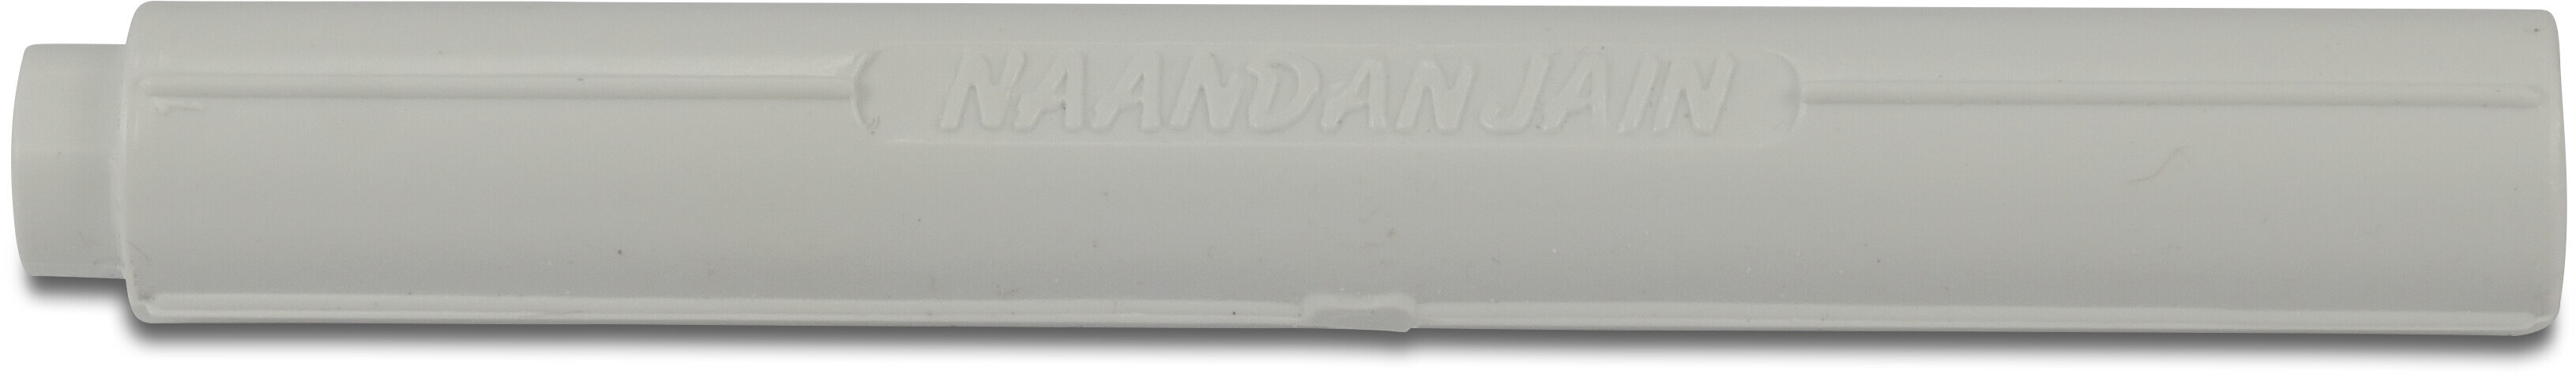 NaanDanJain Stabilisator für Mikroschlauch 7mm Kunststoff 13cm